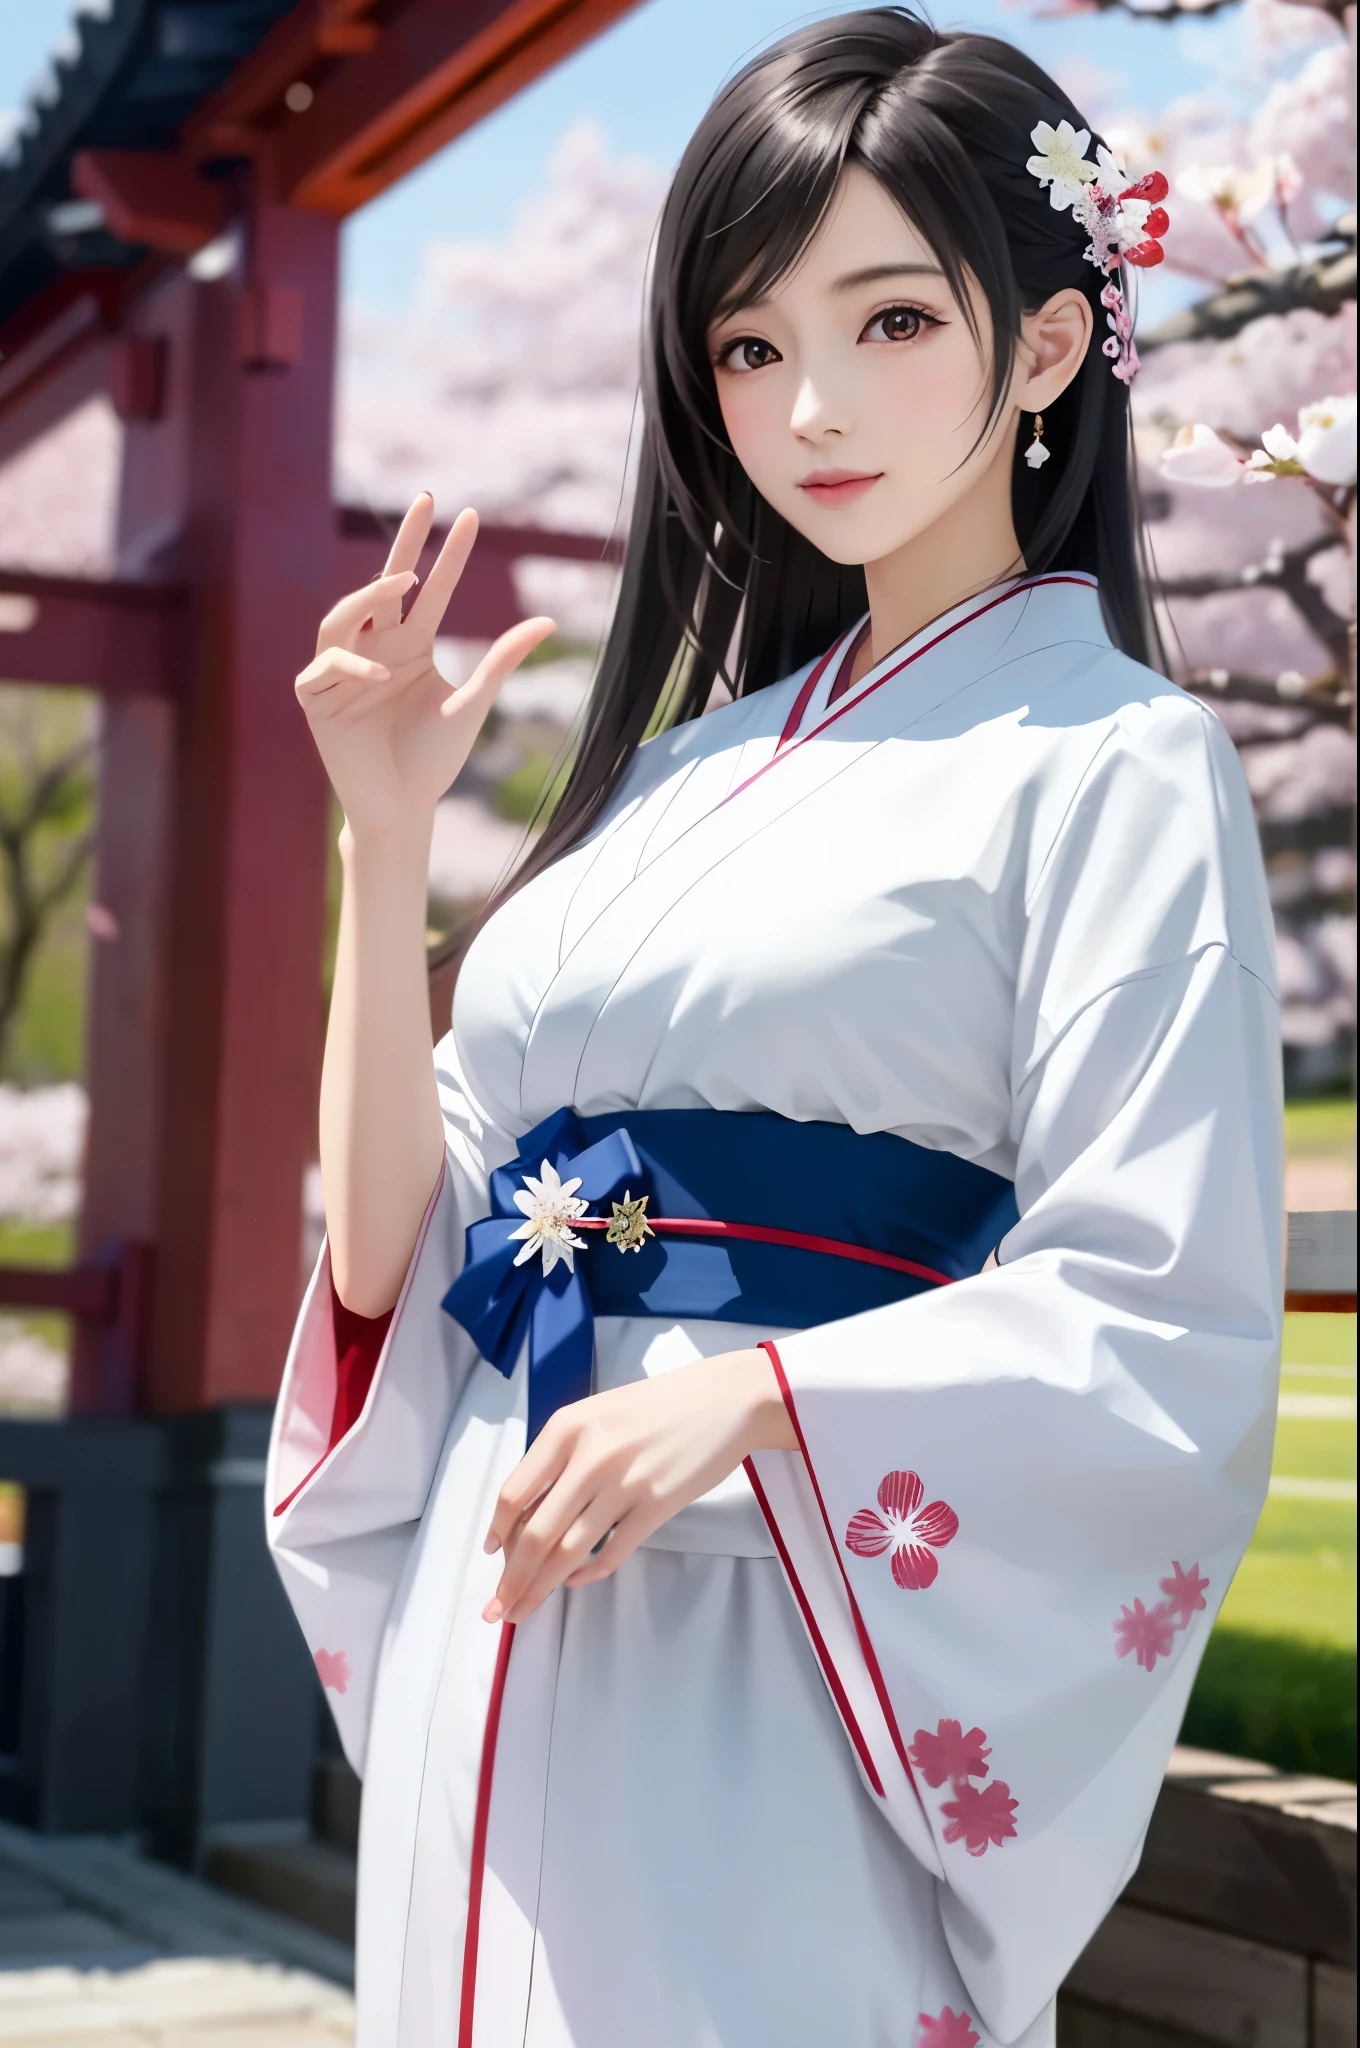 (Top Qualität, Meisterwerk: 1.1), (realistisch: 1.3), brechen (((FF7,Tifa_Lockhart))),ultra-detailliertes Gesicht, detaillierte rote Augen,(schwarzbraune Haare, große Brüste: 1.2), etwa 18 Jahre alt,  (Weiße japanische Kleidung, Kimono , japanische kleidung, Weißes Kirschblütenmuster, Weißes Kirschblüten-Stickmuster, Ein dunkelhaariger, schönes Gesicht, echtes Gesicht, Schöne Detailaugen, Schöne Haut), Hair flutters in der Wind, Haare springen, Rosa Kirschblütenbaum, Blütenblätter flattern, Sakura-Schneesturm, Herrliche Aussicht, Morgenrot, Sonne im Hintergrund, der Wind, Gottheiten, tusk, Mythos, Weites Land, Kawaii,(coole pose:1.2),Hintergrundbilder, ultrahohe Auflösung, ultrahohe Qualität, Gesichtsfokus:1.2